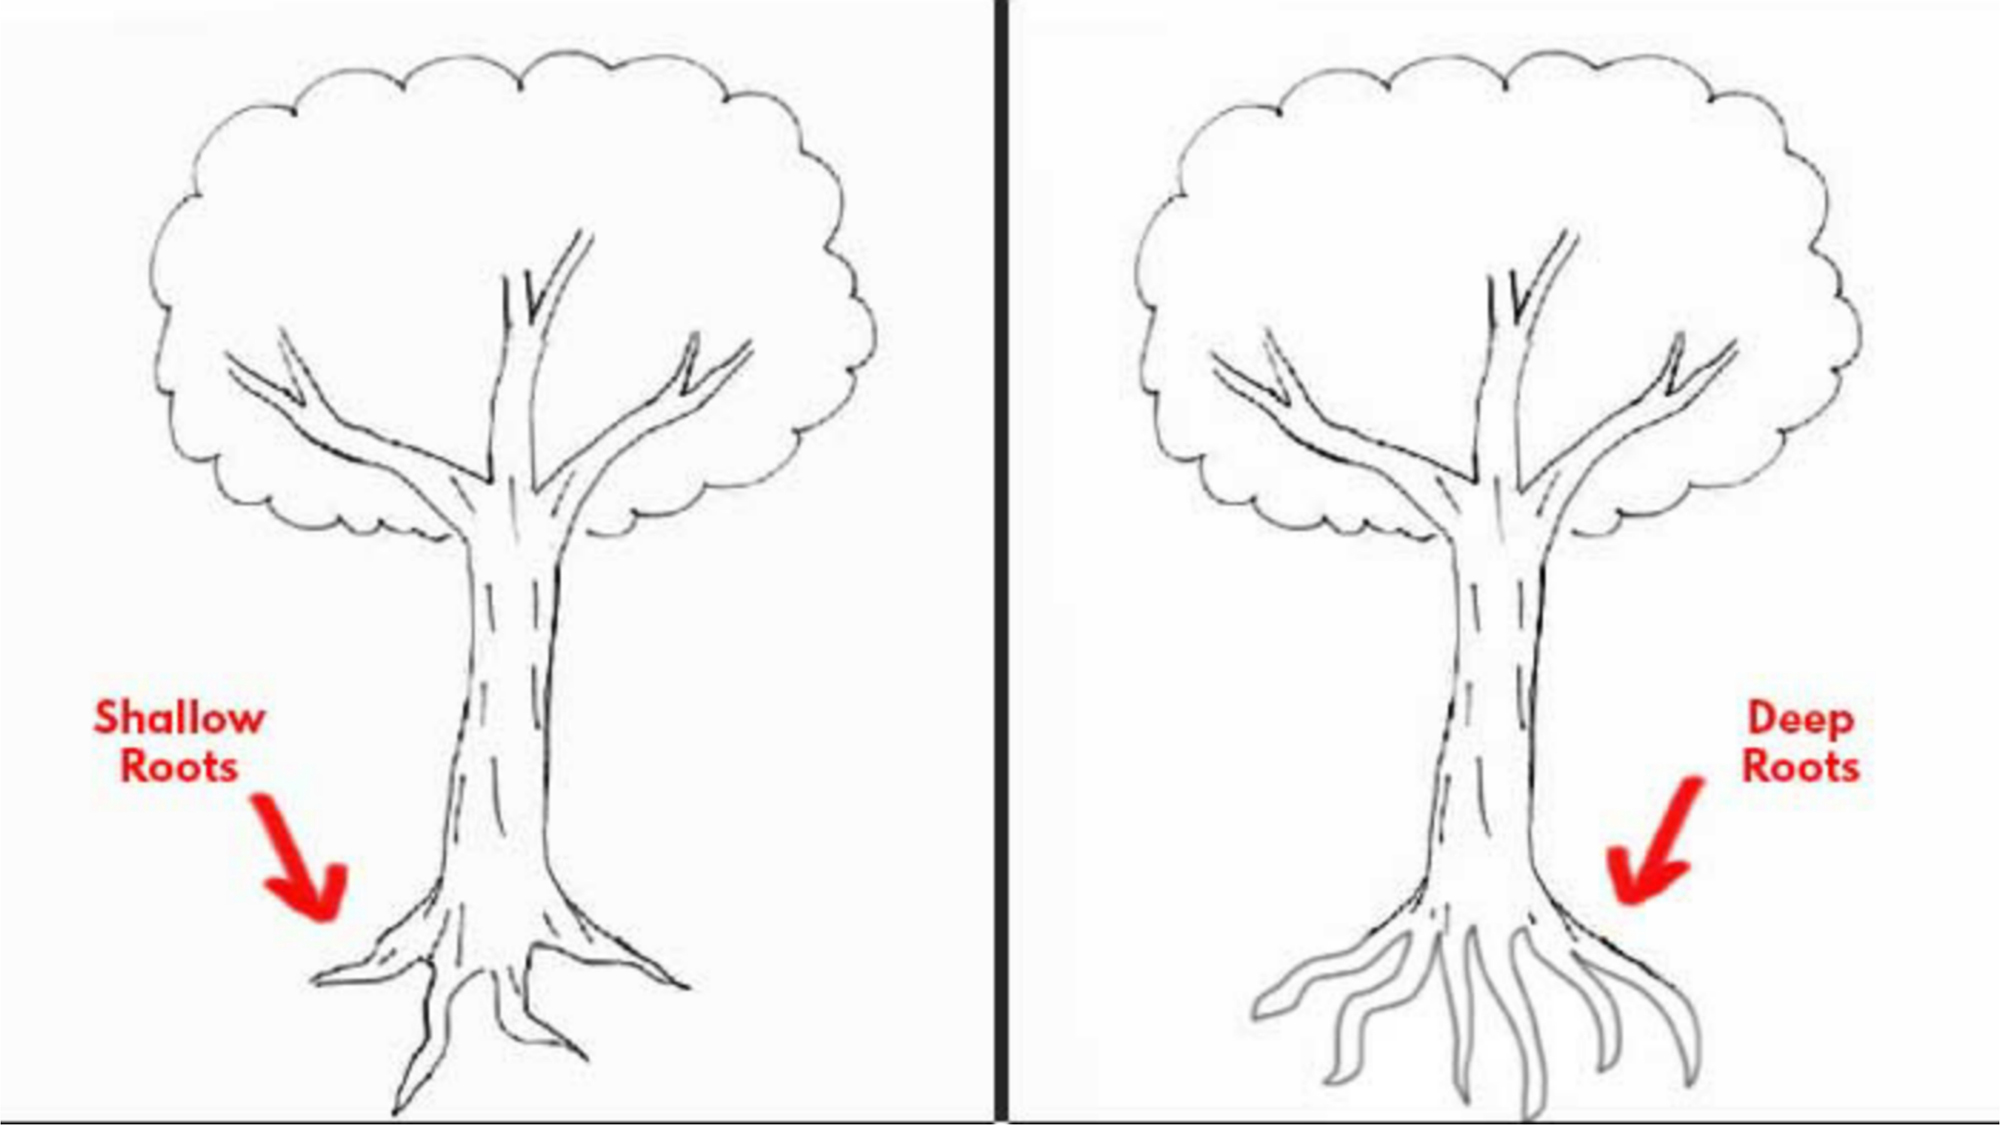 Bạn đang muốn tìm hiểu cách vẽ cây cho bức tranh của mình trở nên sinh động hơn? Hãy cùng xem qua các hình ảnh từ các nghệ sĩ đã thành công trong việc này và học hỏi từ họ.